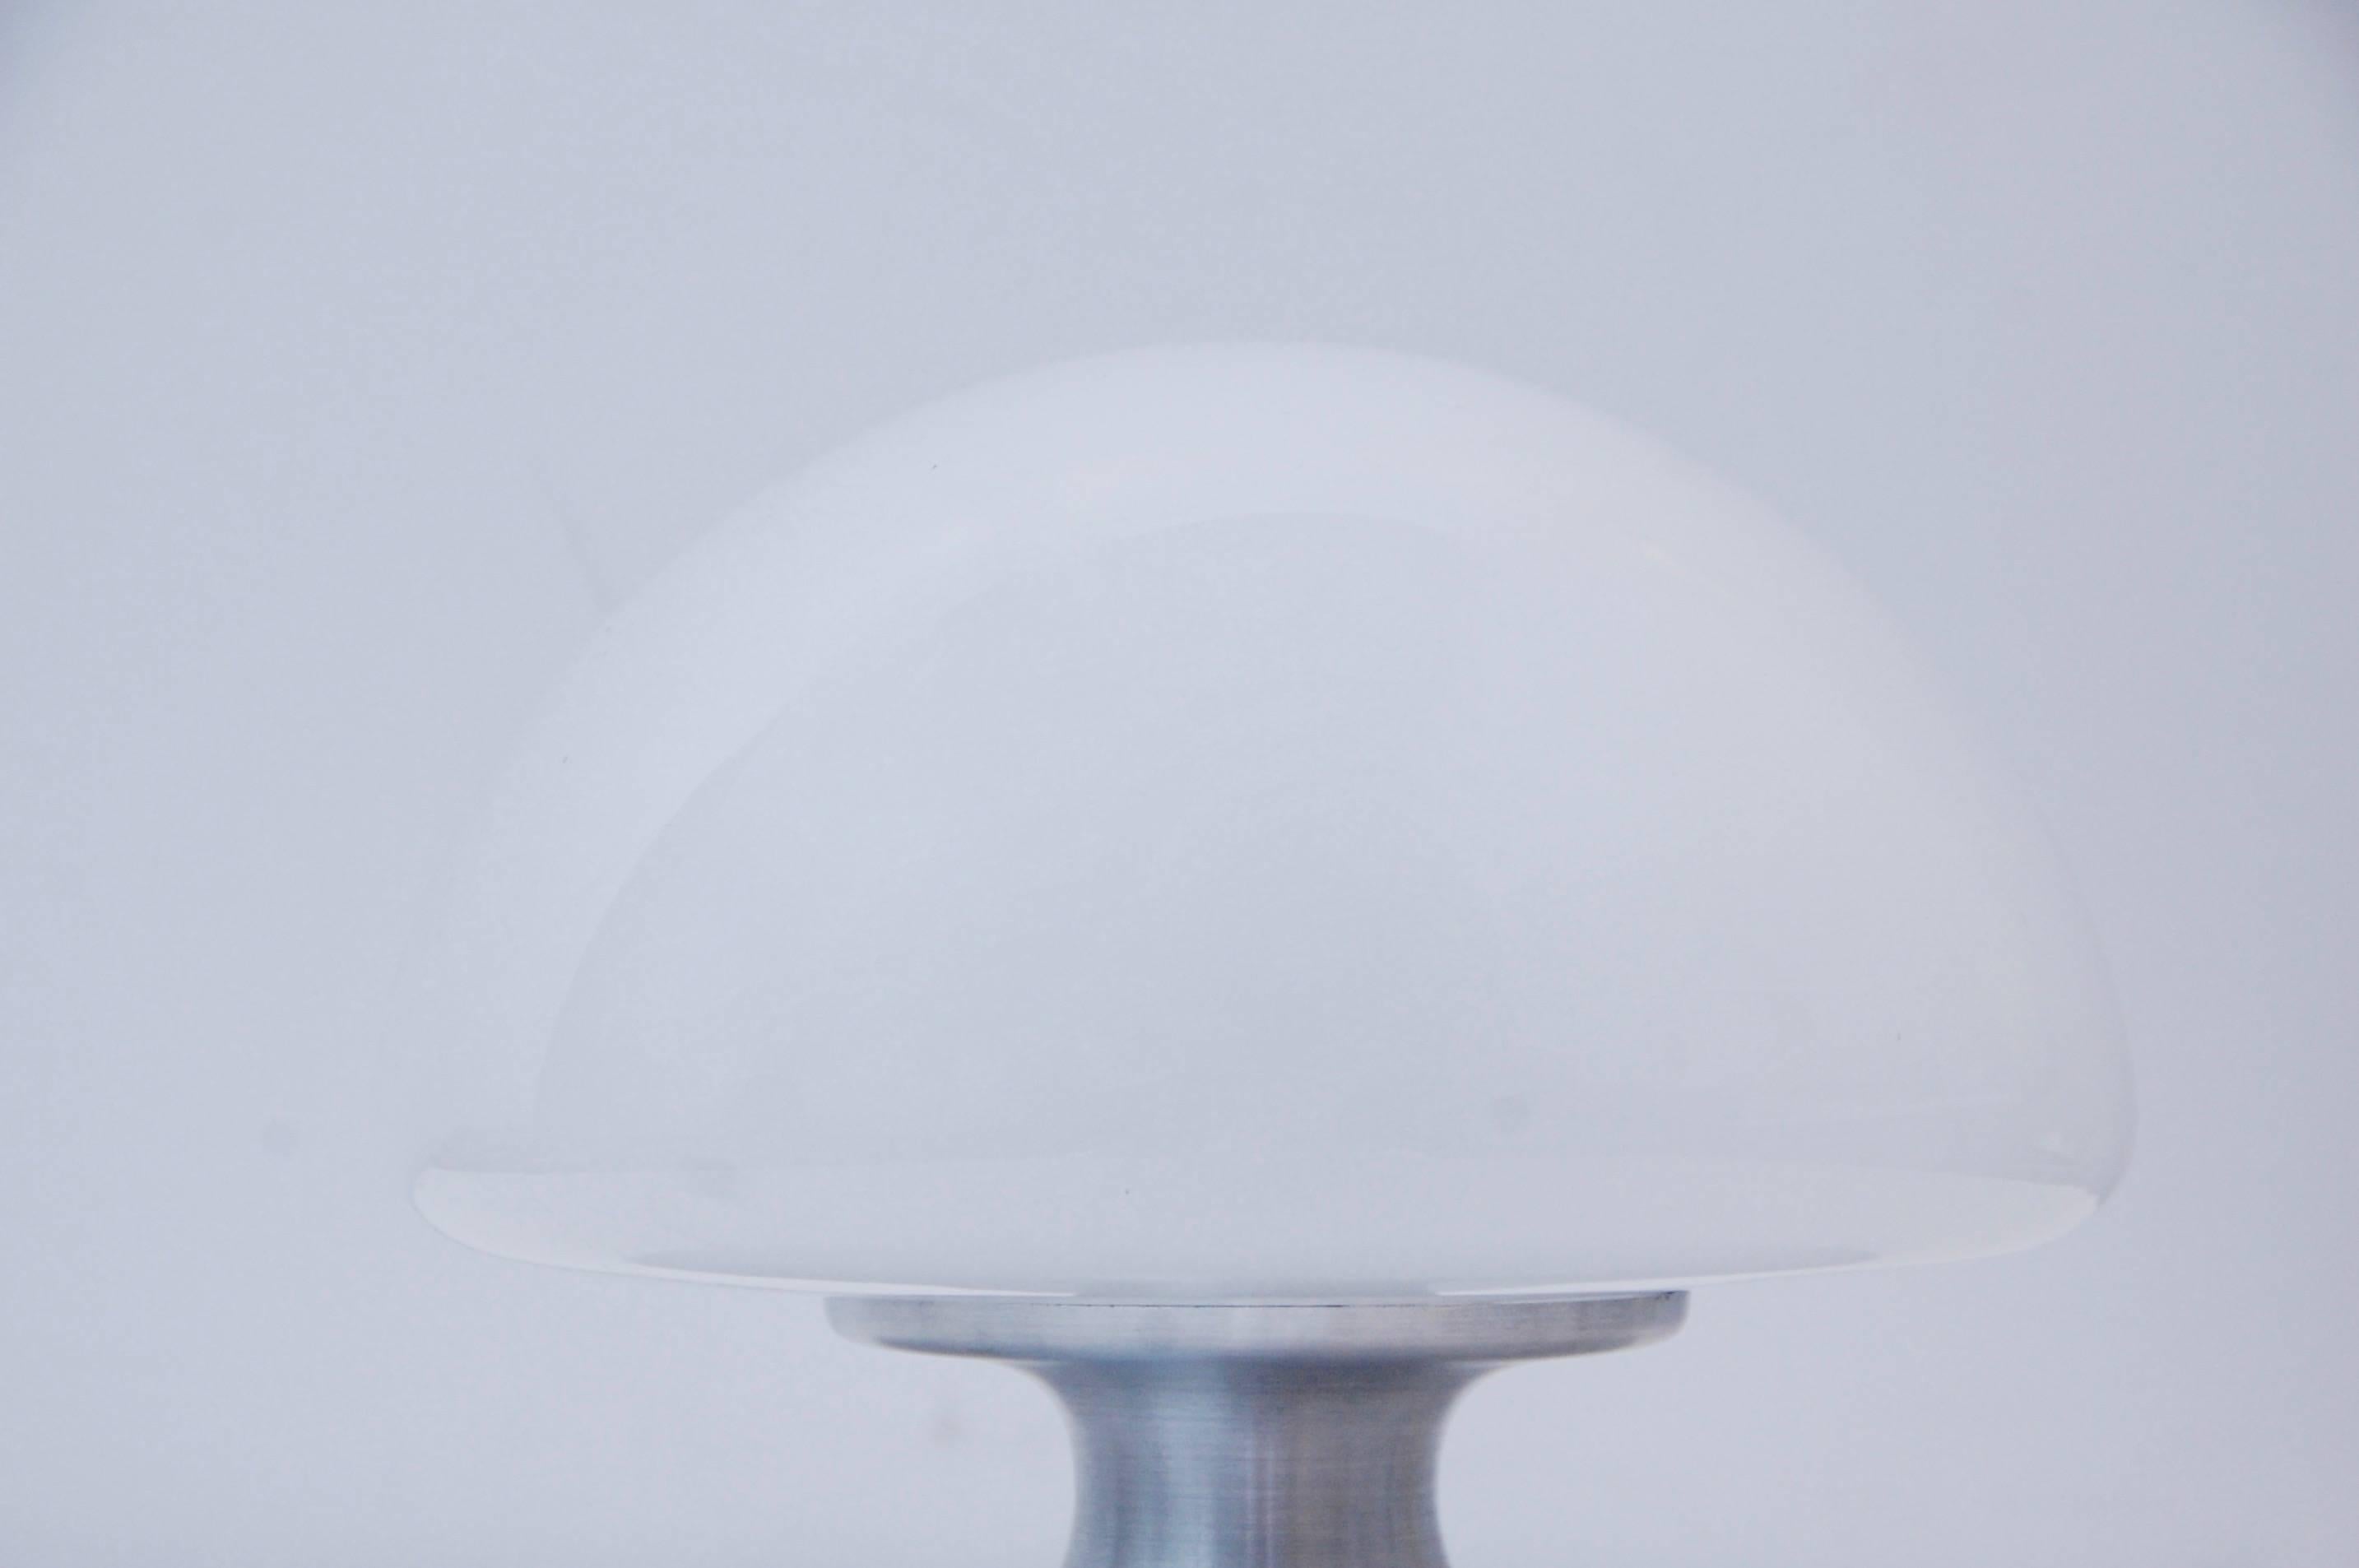 Brushed 1970s Satin Aluminium Table Lamps